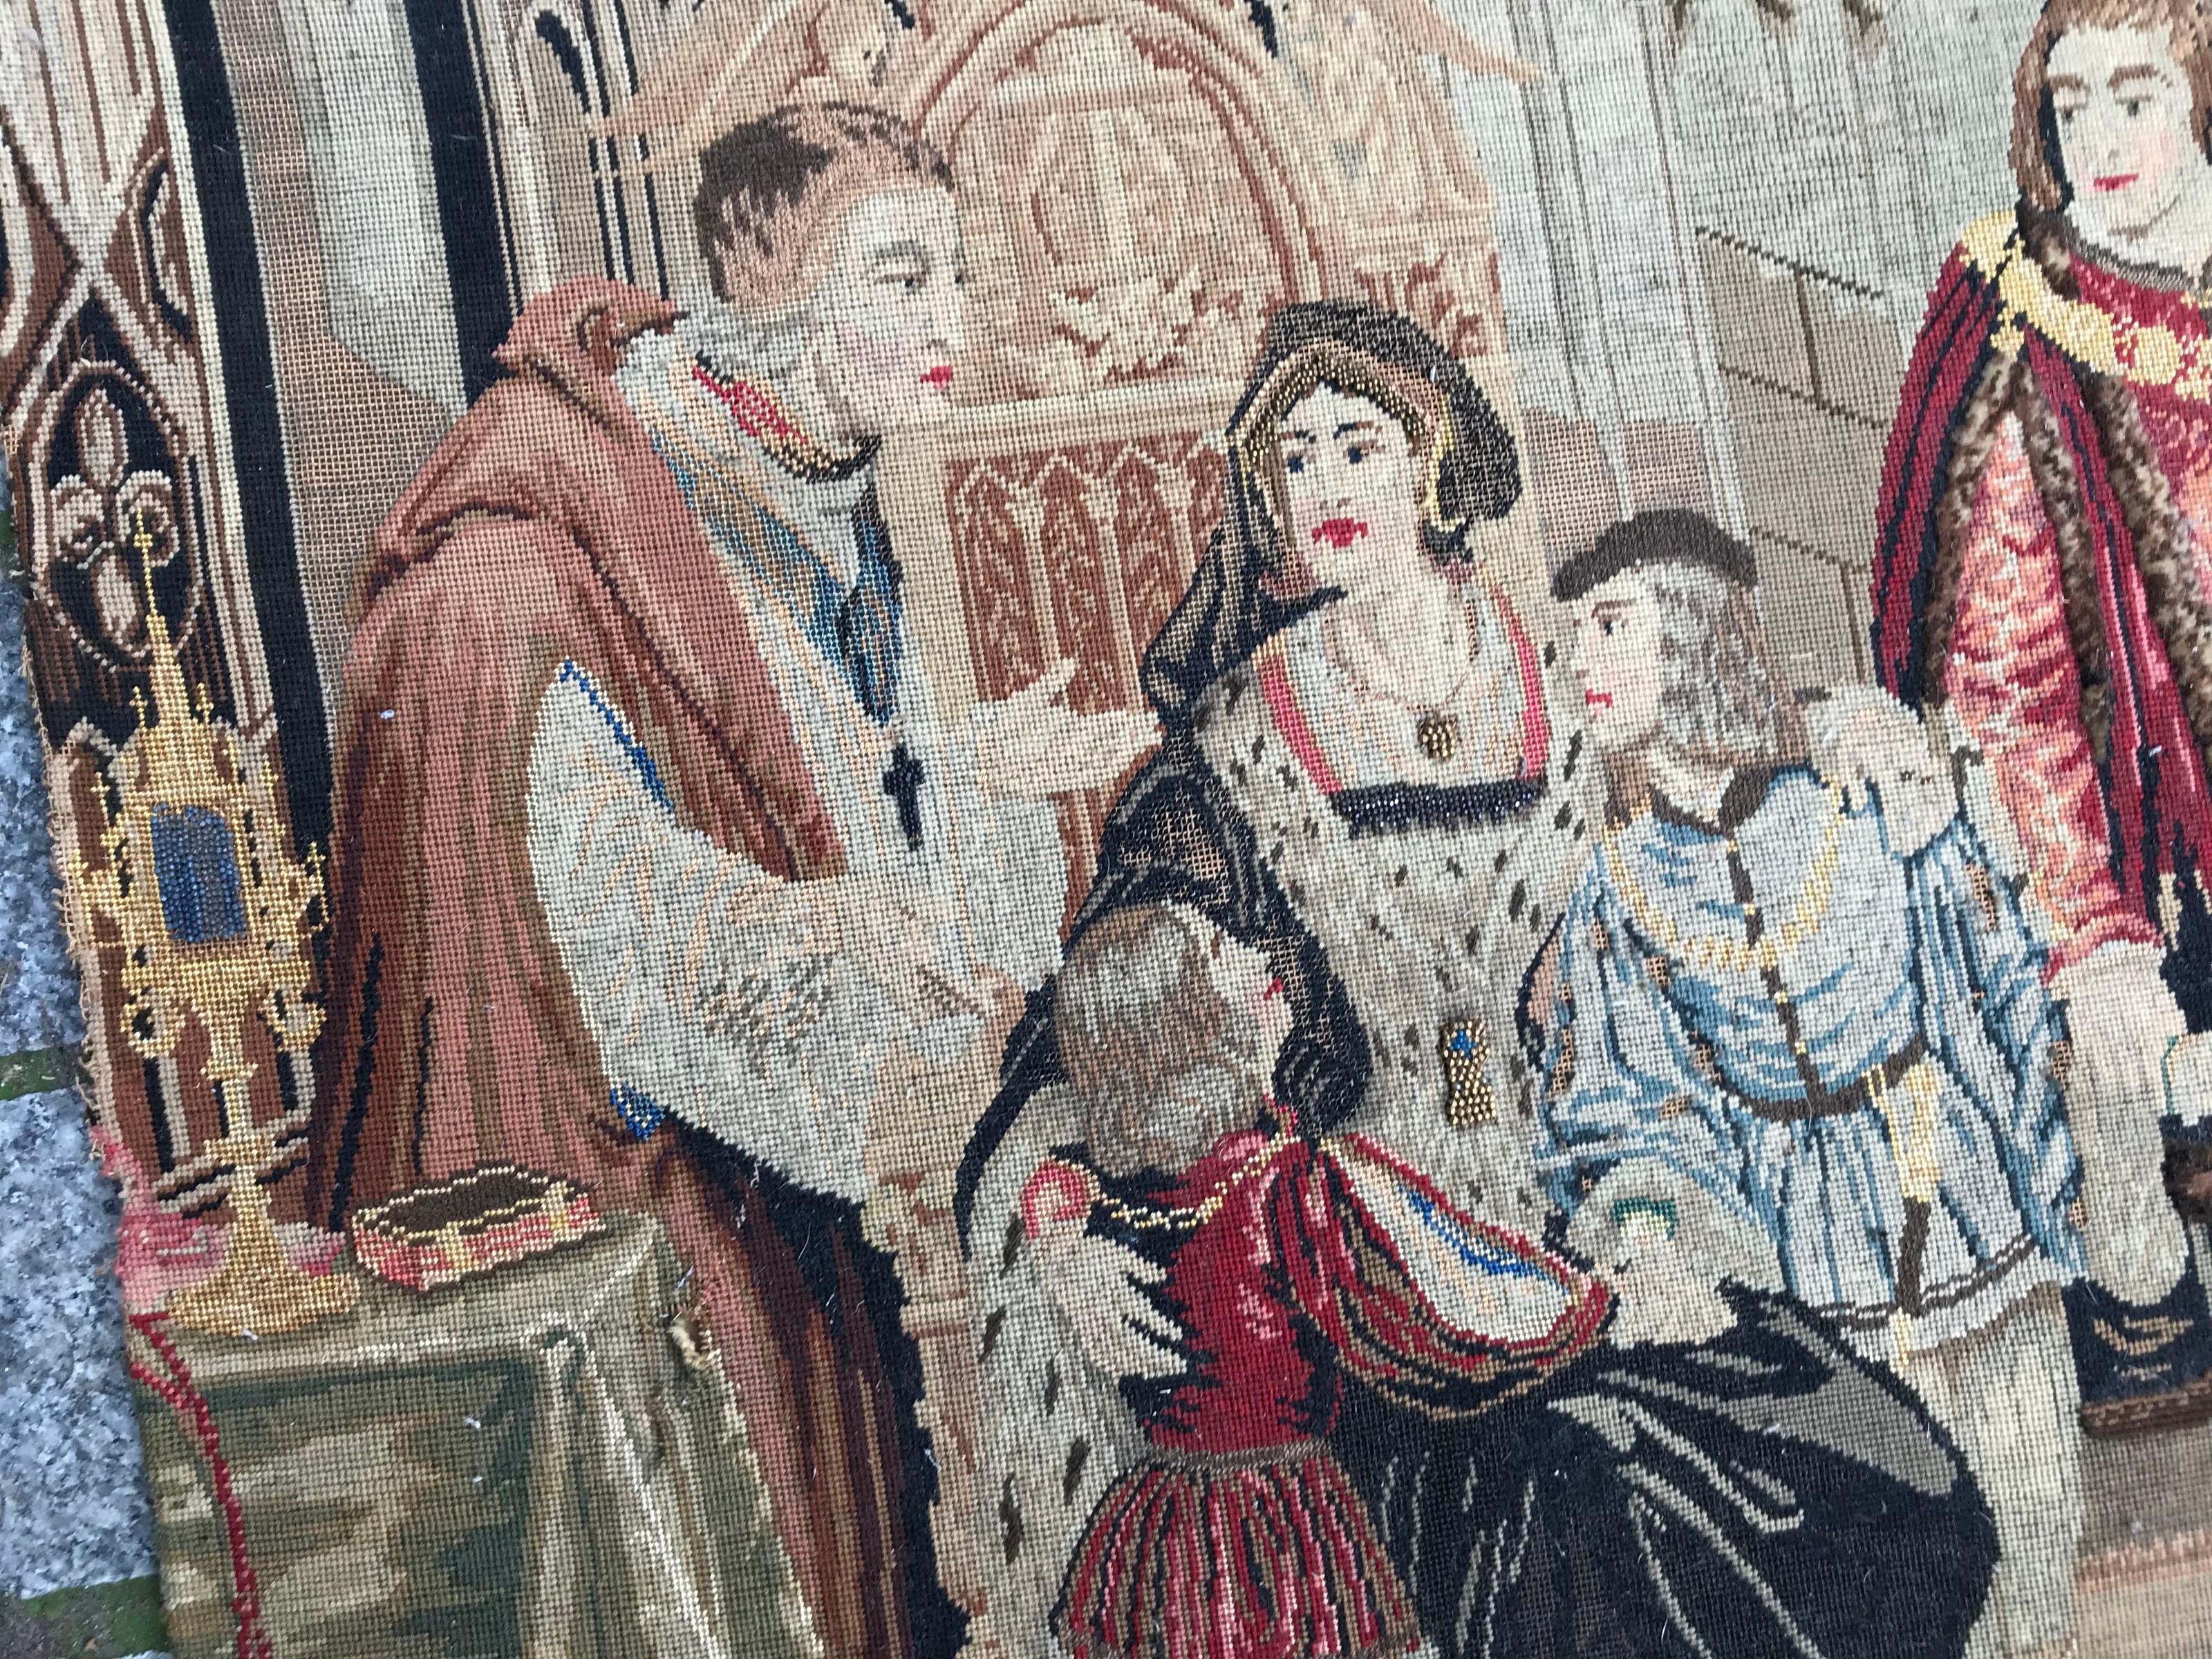 Magnifique tapisserie à l'aiguille du 19ème siècle avec un beau design et des couleurs naturelles, entièrement brodée à la main selon la méthode à l'aiguille avec de la laine et de la soie.

